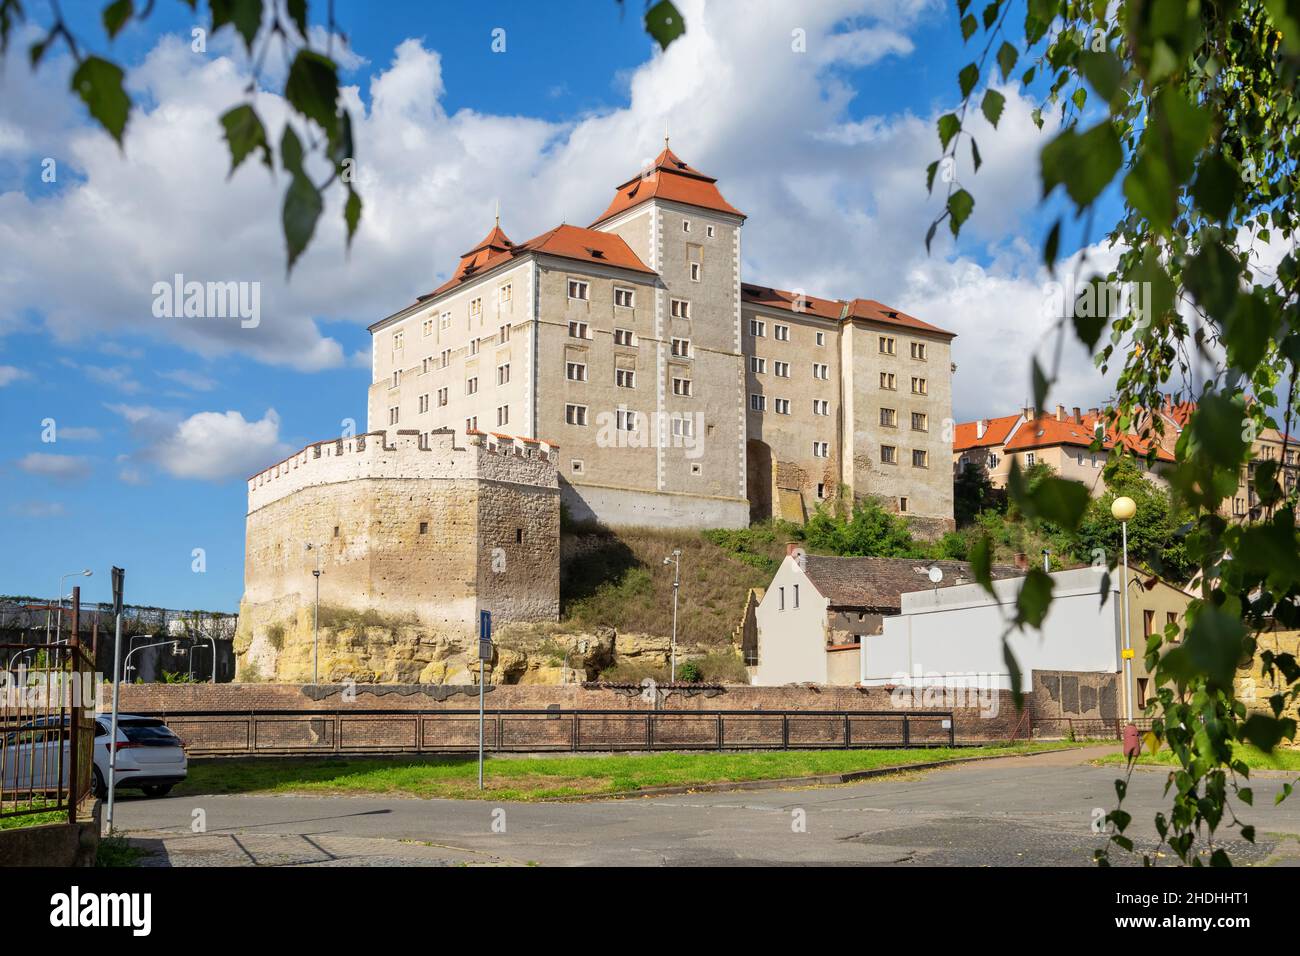 Castle in  Mlada Boleslav, Central Bohemian Region, Czechia Stock Photo